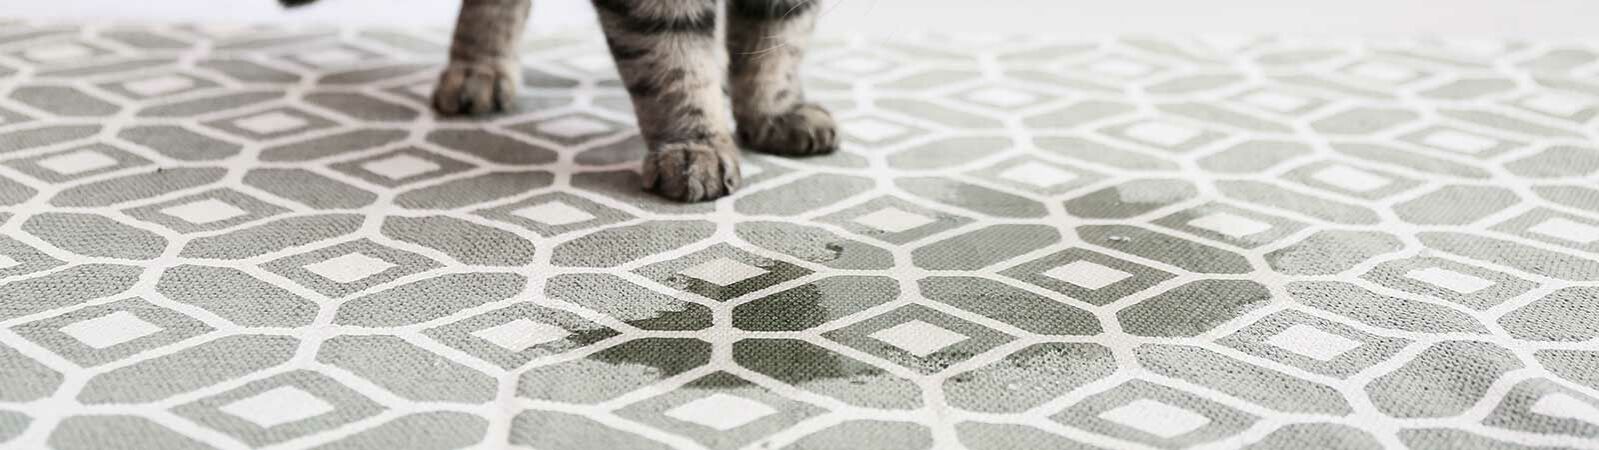 Eine Katze neben einem Fleck auf dem Teppich.